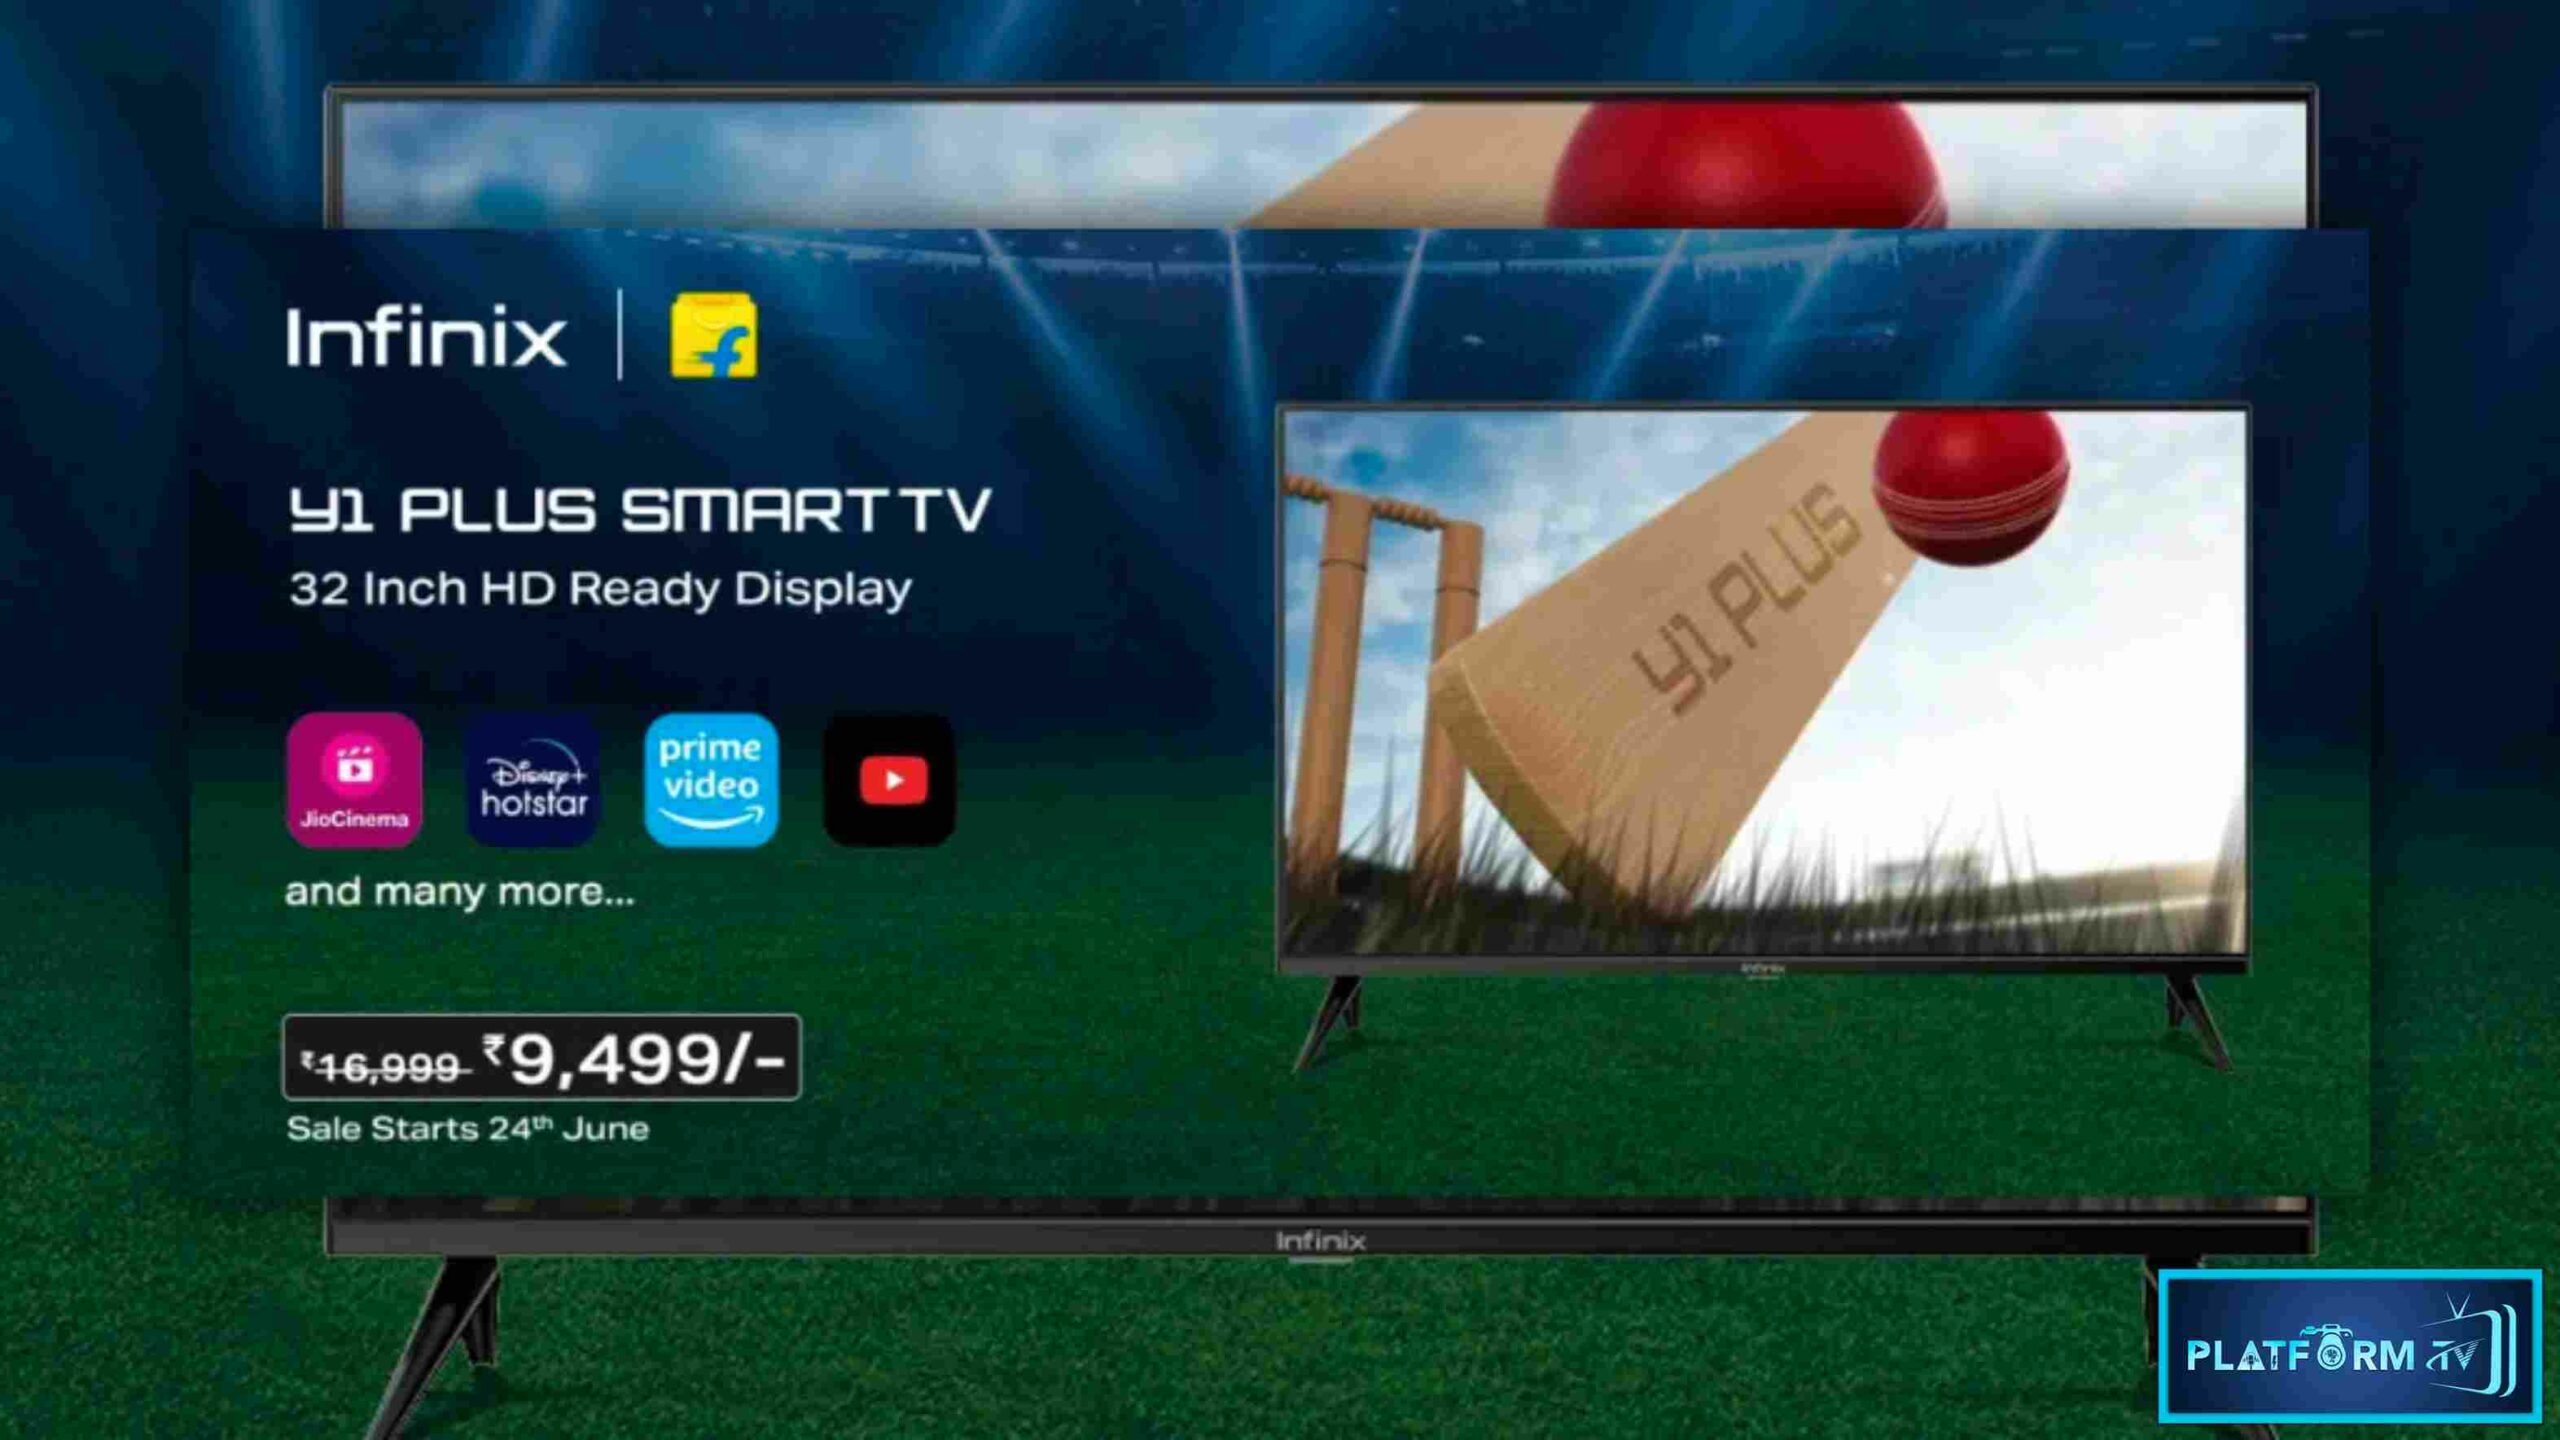 Infinix 32Y1 Plus Smart TV - Platform Tamil